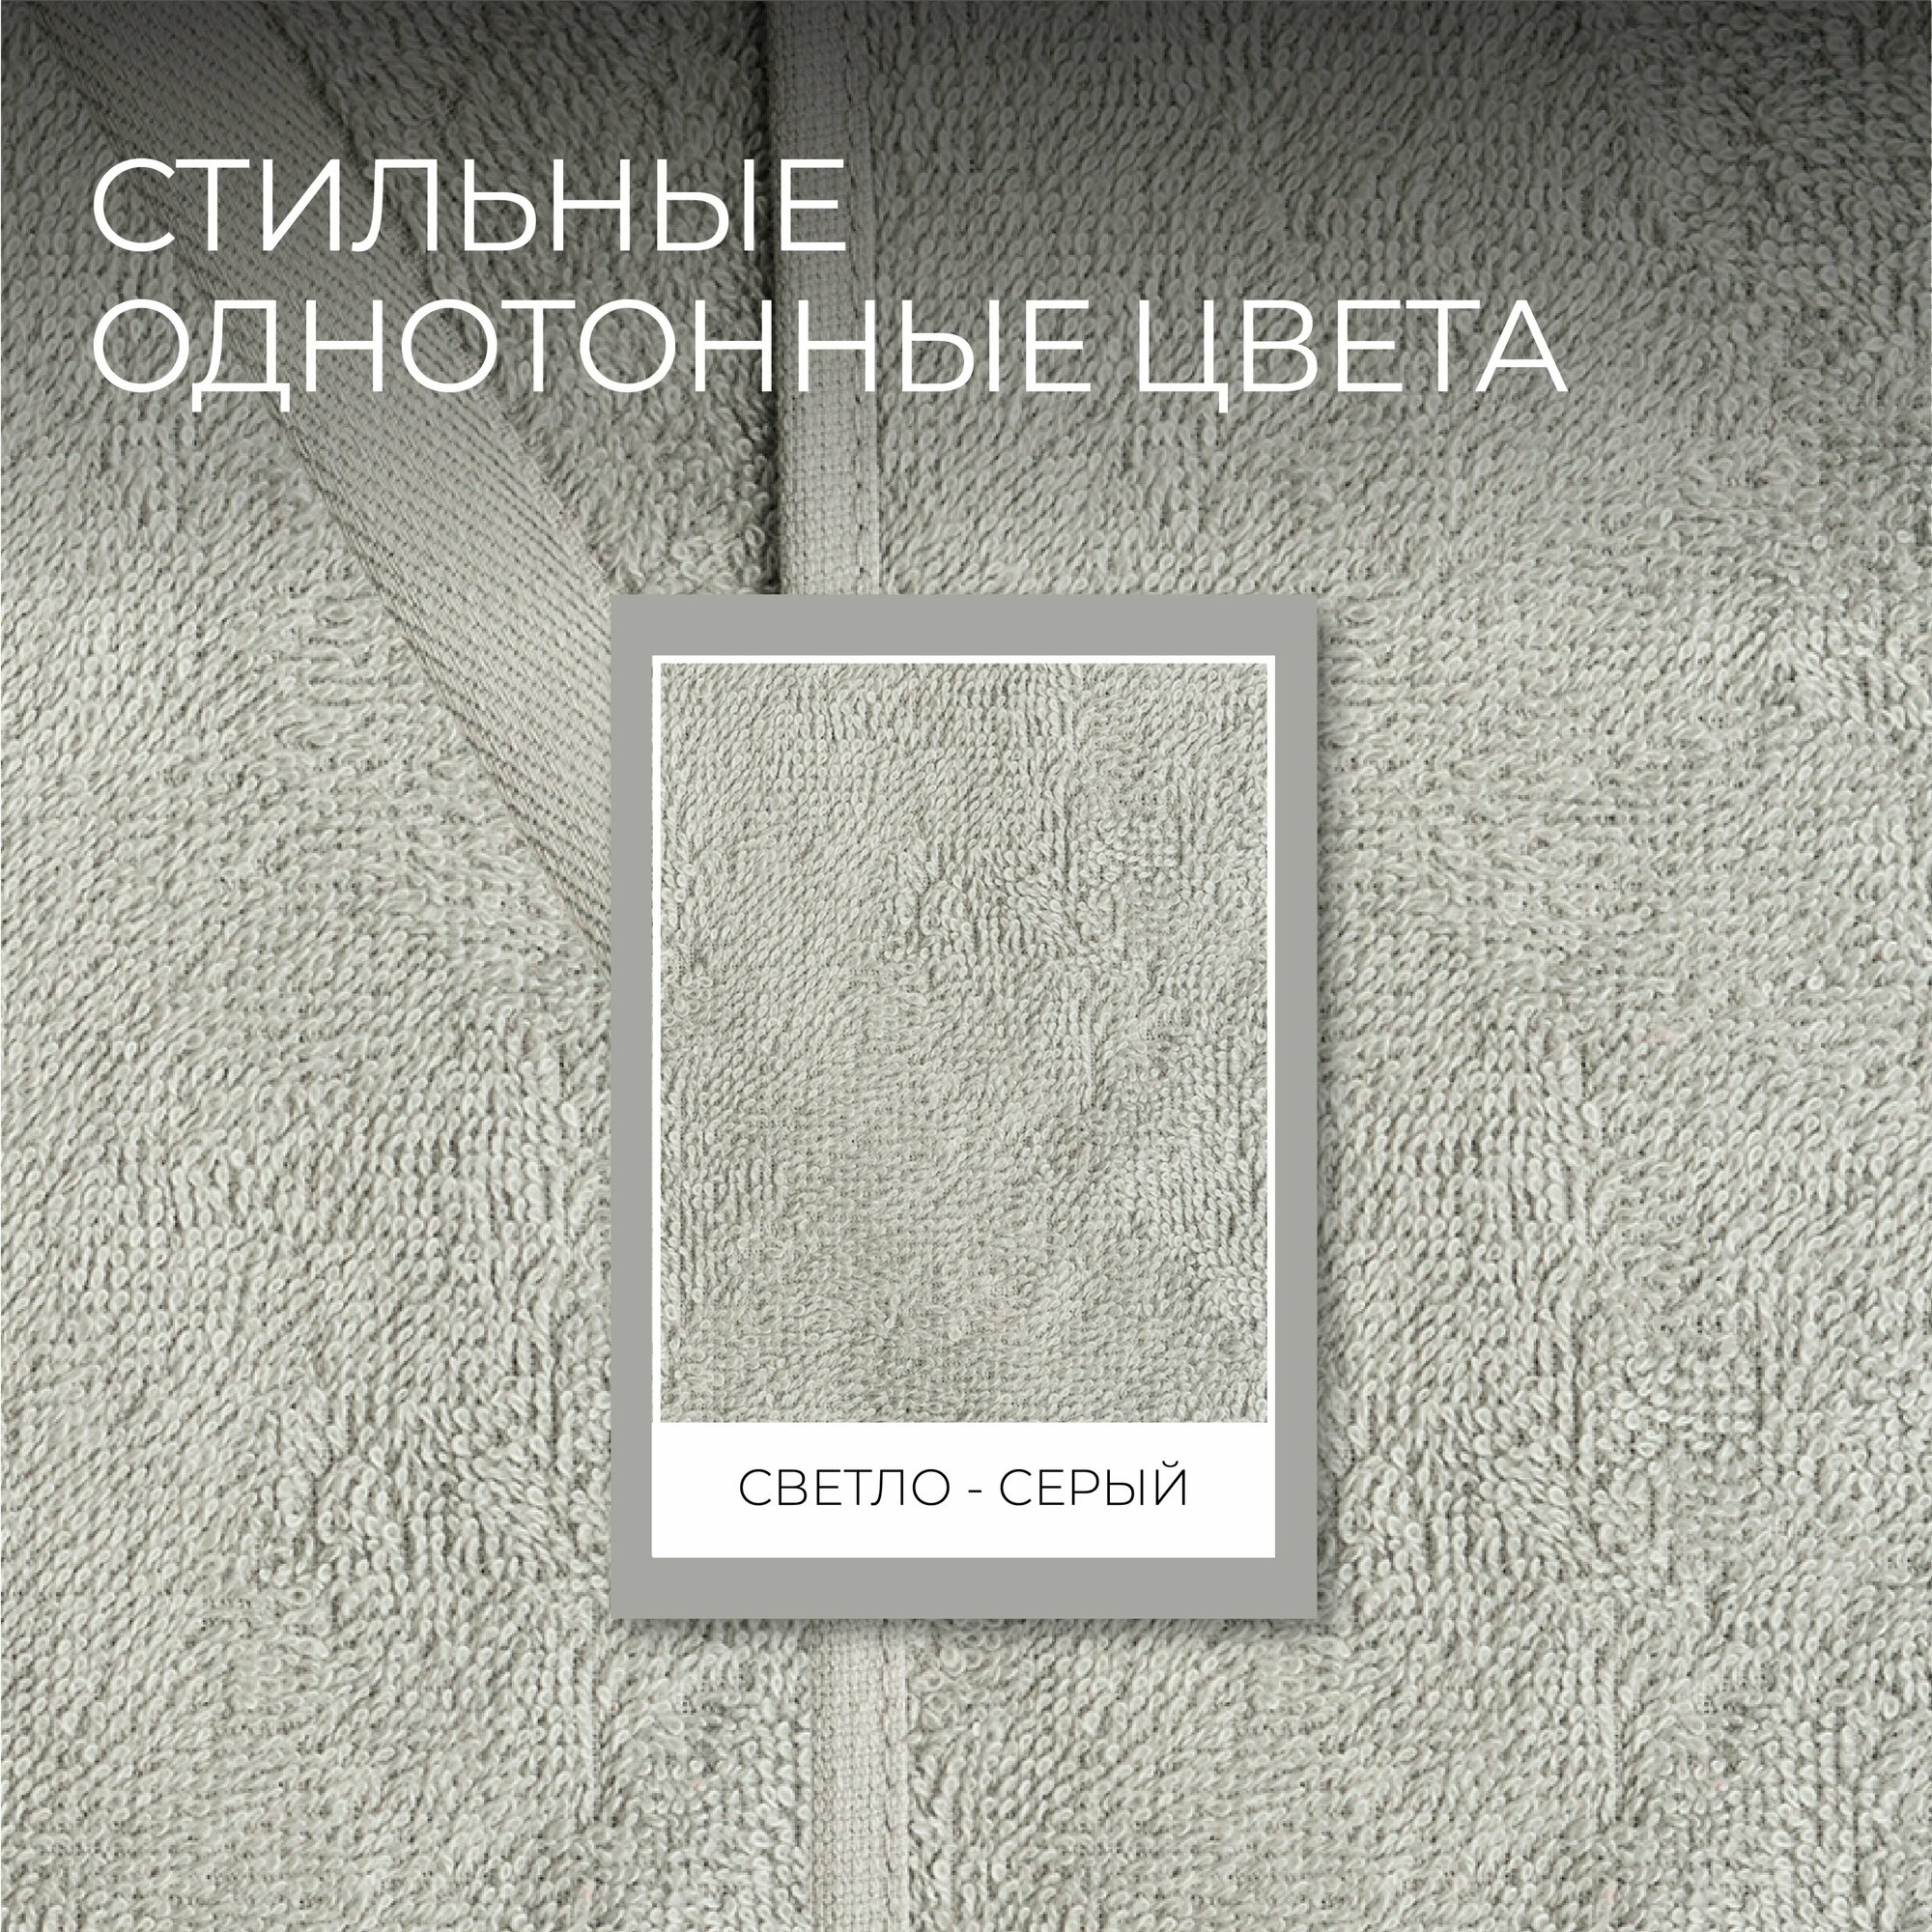 Полотенца махровые Unifico Nature светло-серый, набор из 2 шт: 50х80-1,70х130-1